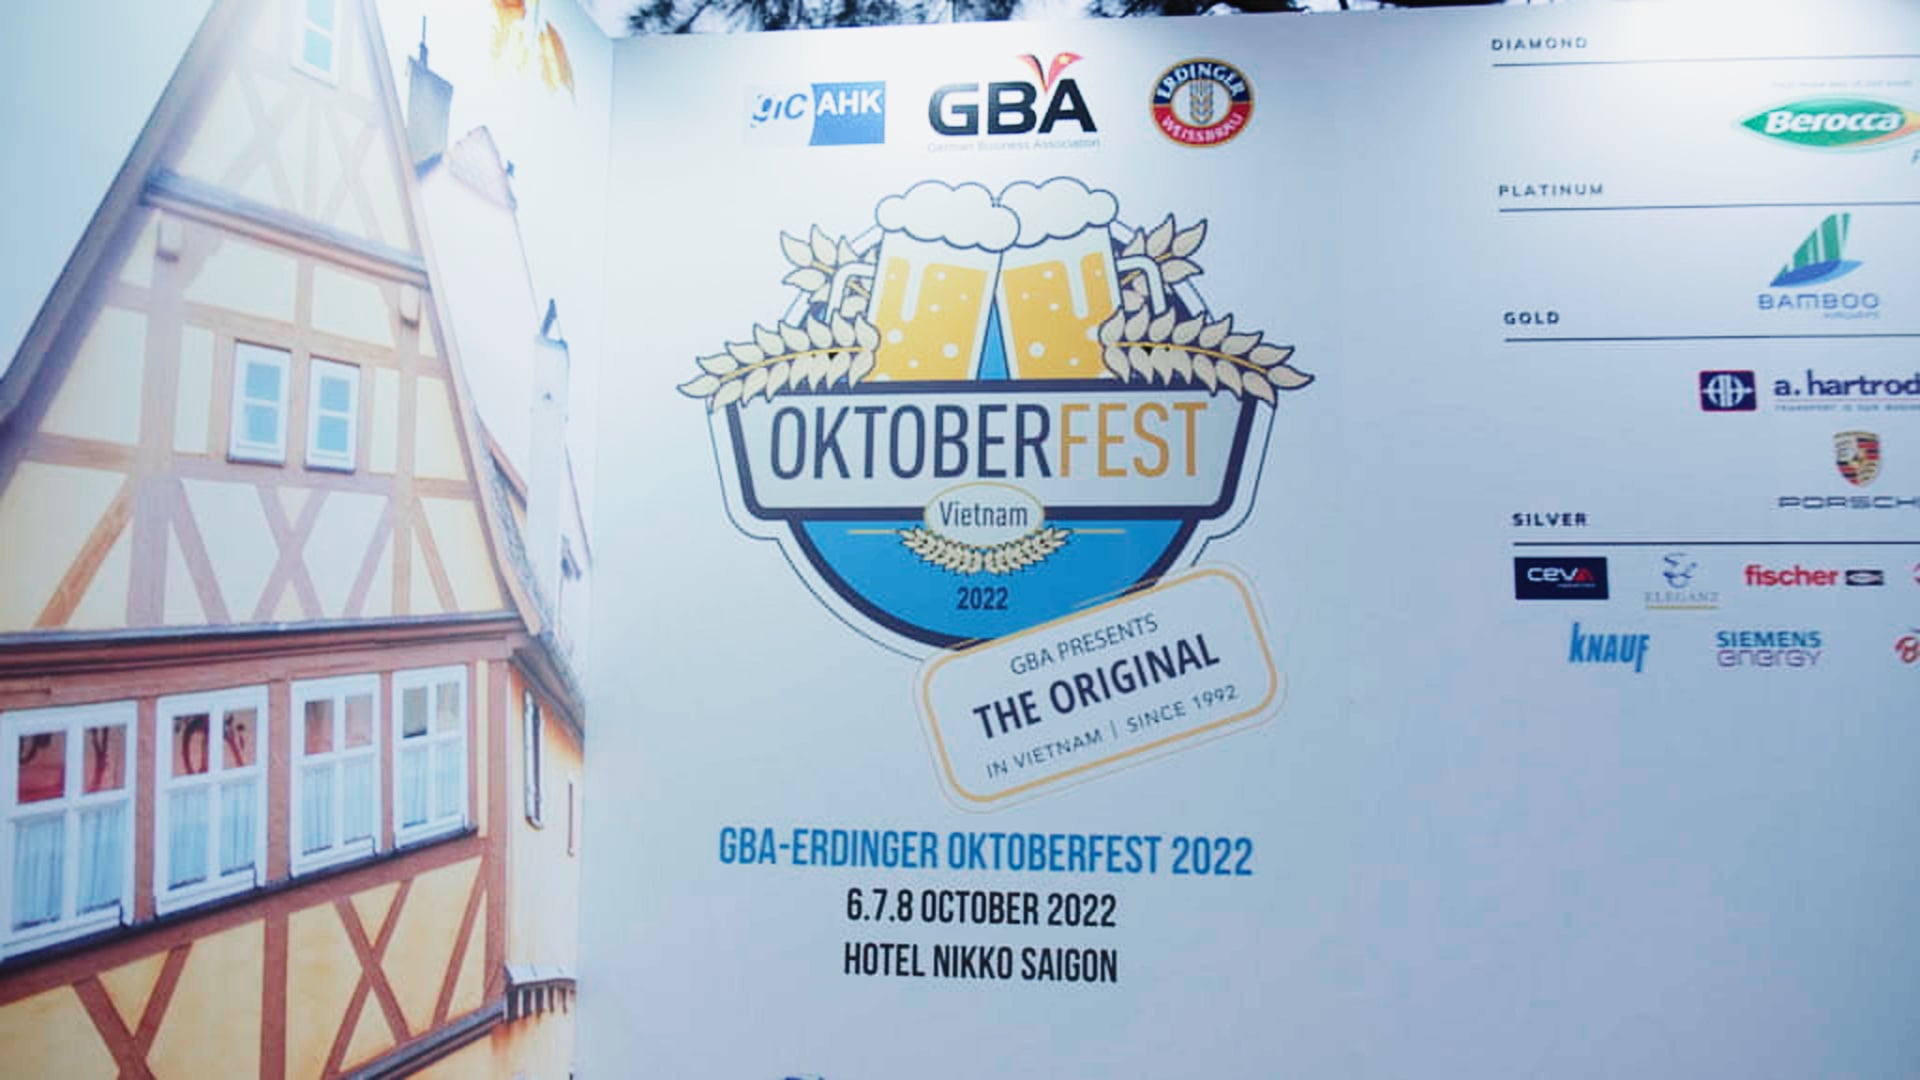 GERMAN BUSINESS ASSOCIATION | GBA-ERDINGER OKTOBERFEST 2022 RECAP VIDEO